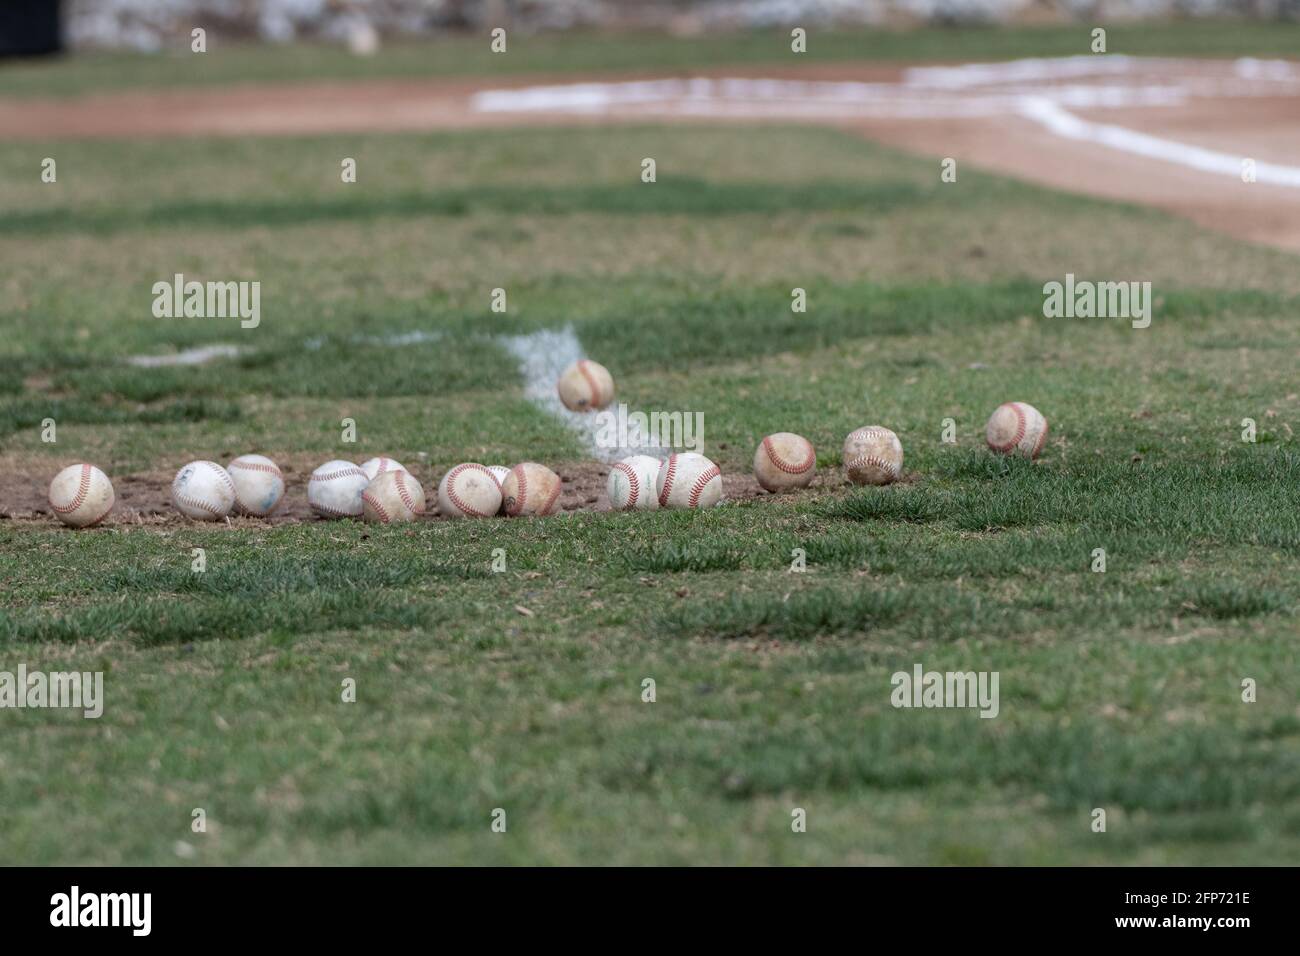 Erba sul campo disseminata di una varietà di palle di base con tutte le cuciture che mostrano. Foto Stock